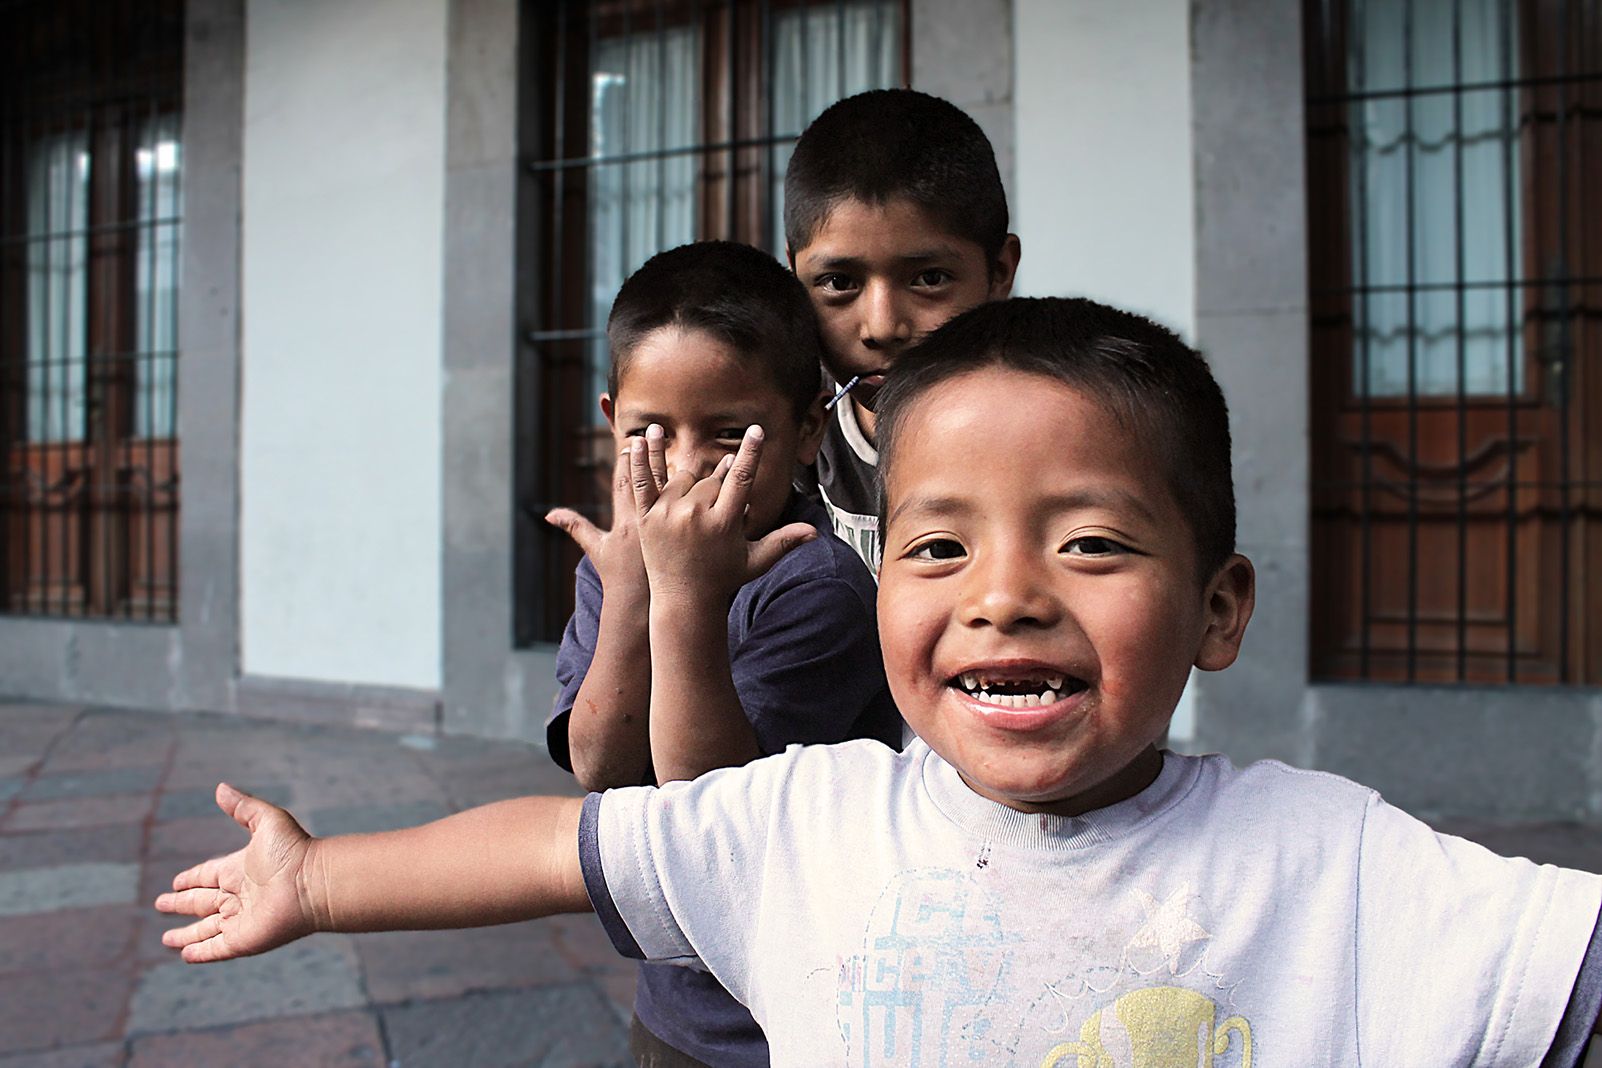 Manuel Gerez del Río   Encara la vida és un joc, nens indígenes als carrers   Santiago de Querétaro, México